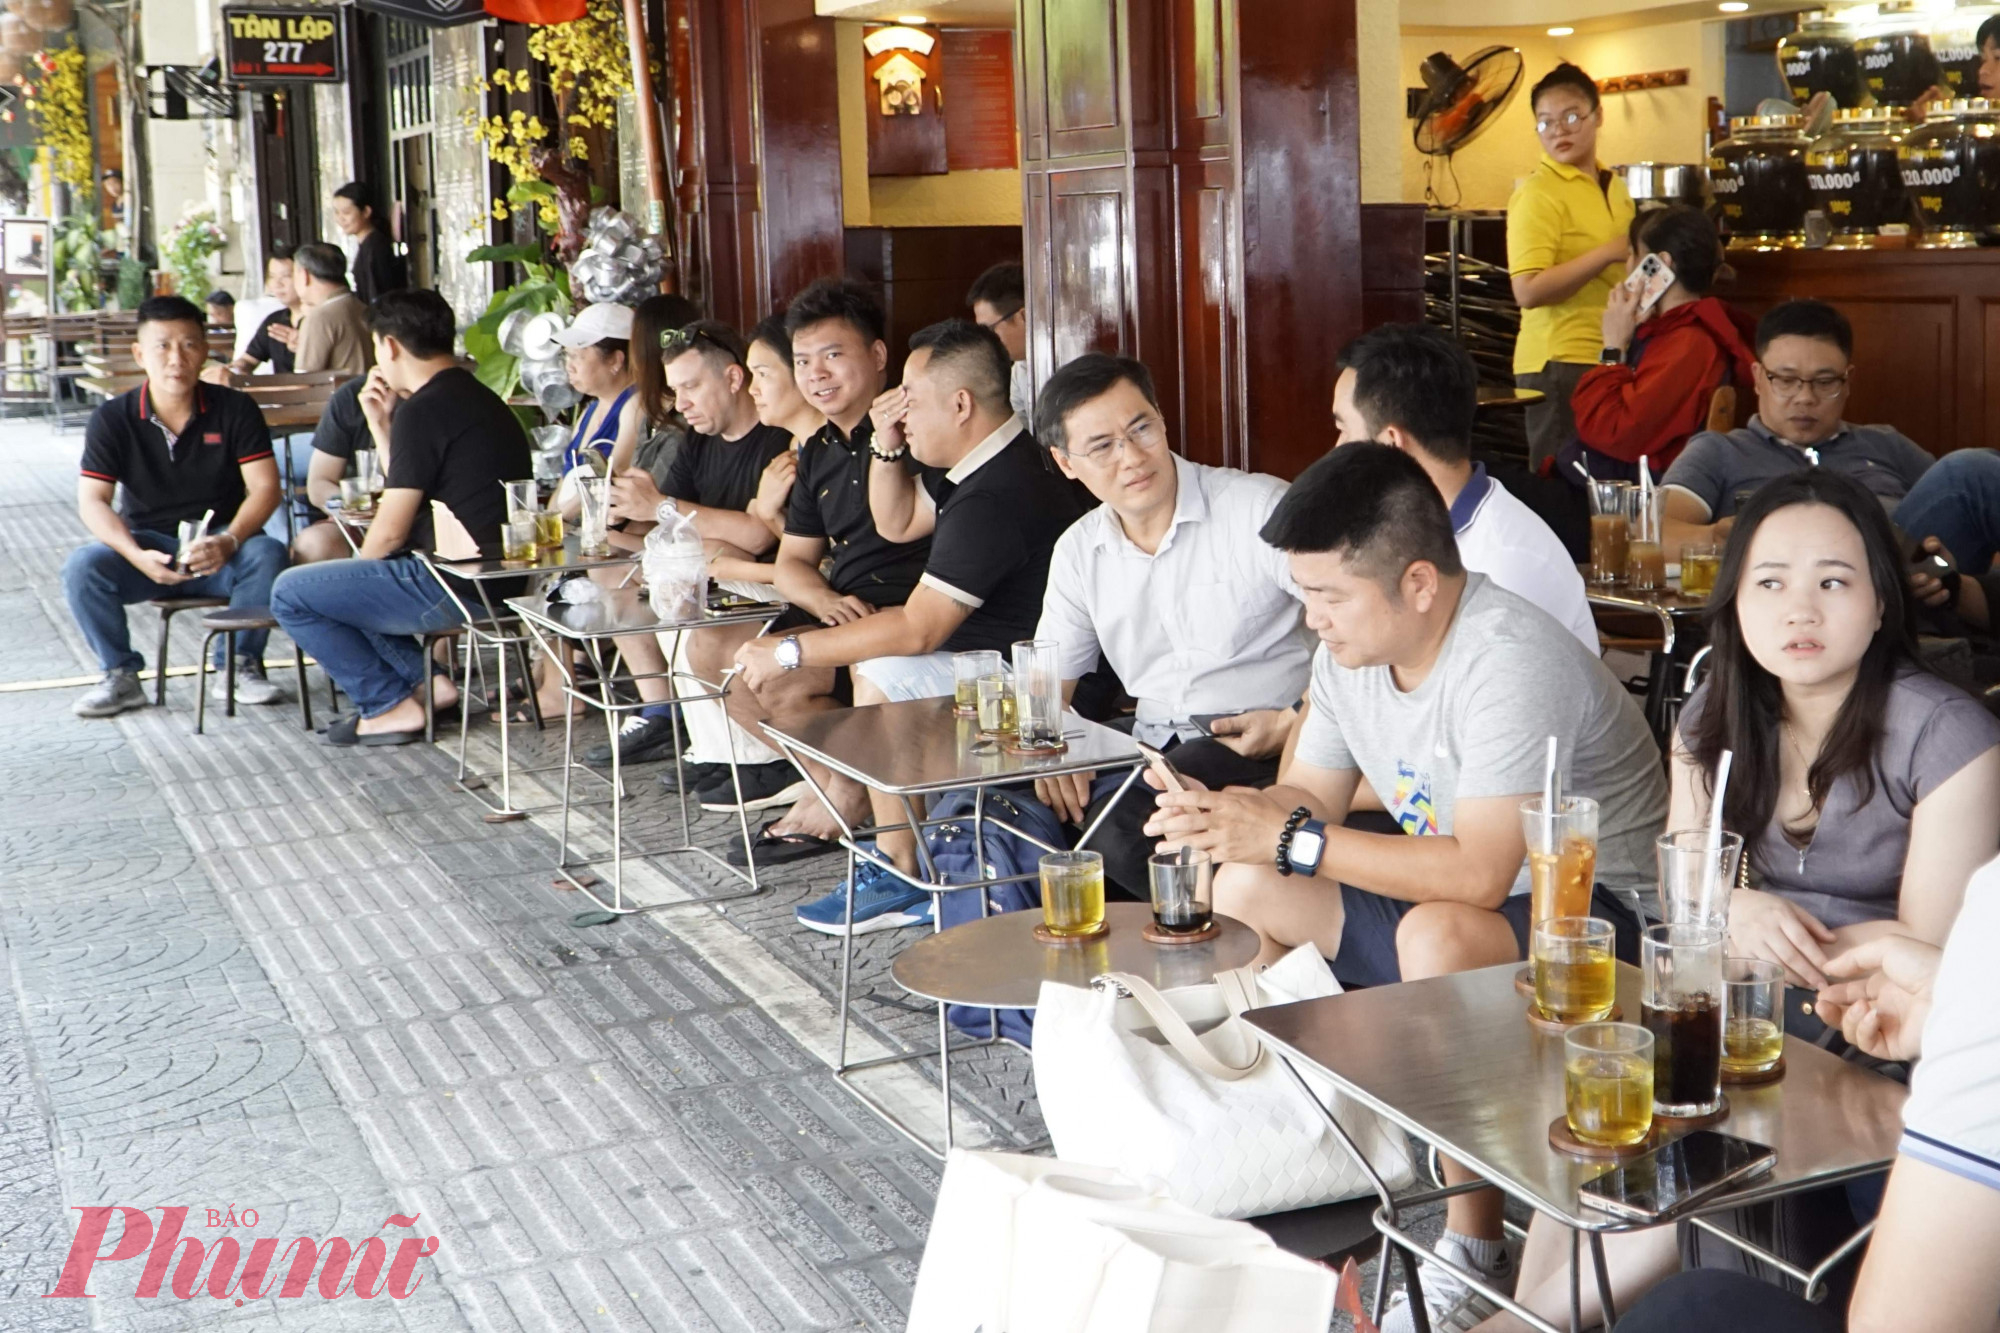 Khách hàng yên tâm ngồi uống cà phê ngoài hè phố trên đường Lê Thánh Tôn, phường Bến Thành - Ảnh: Vũ Quyền